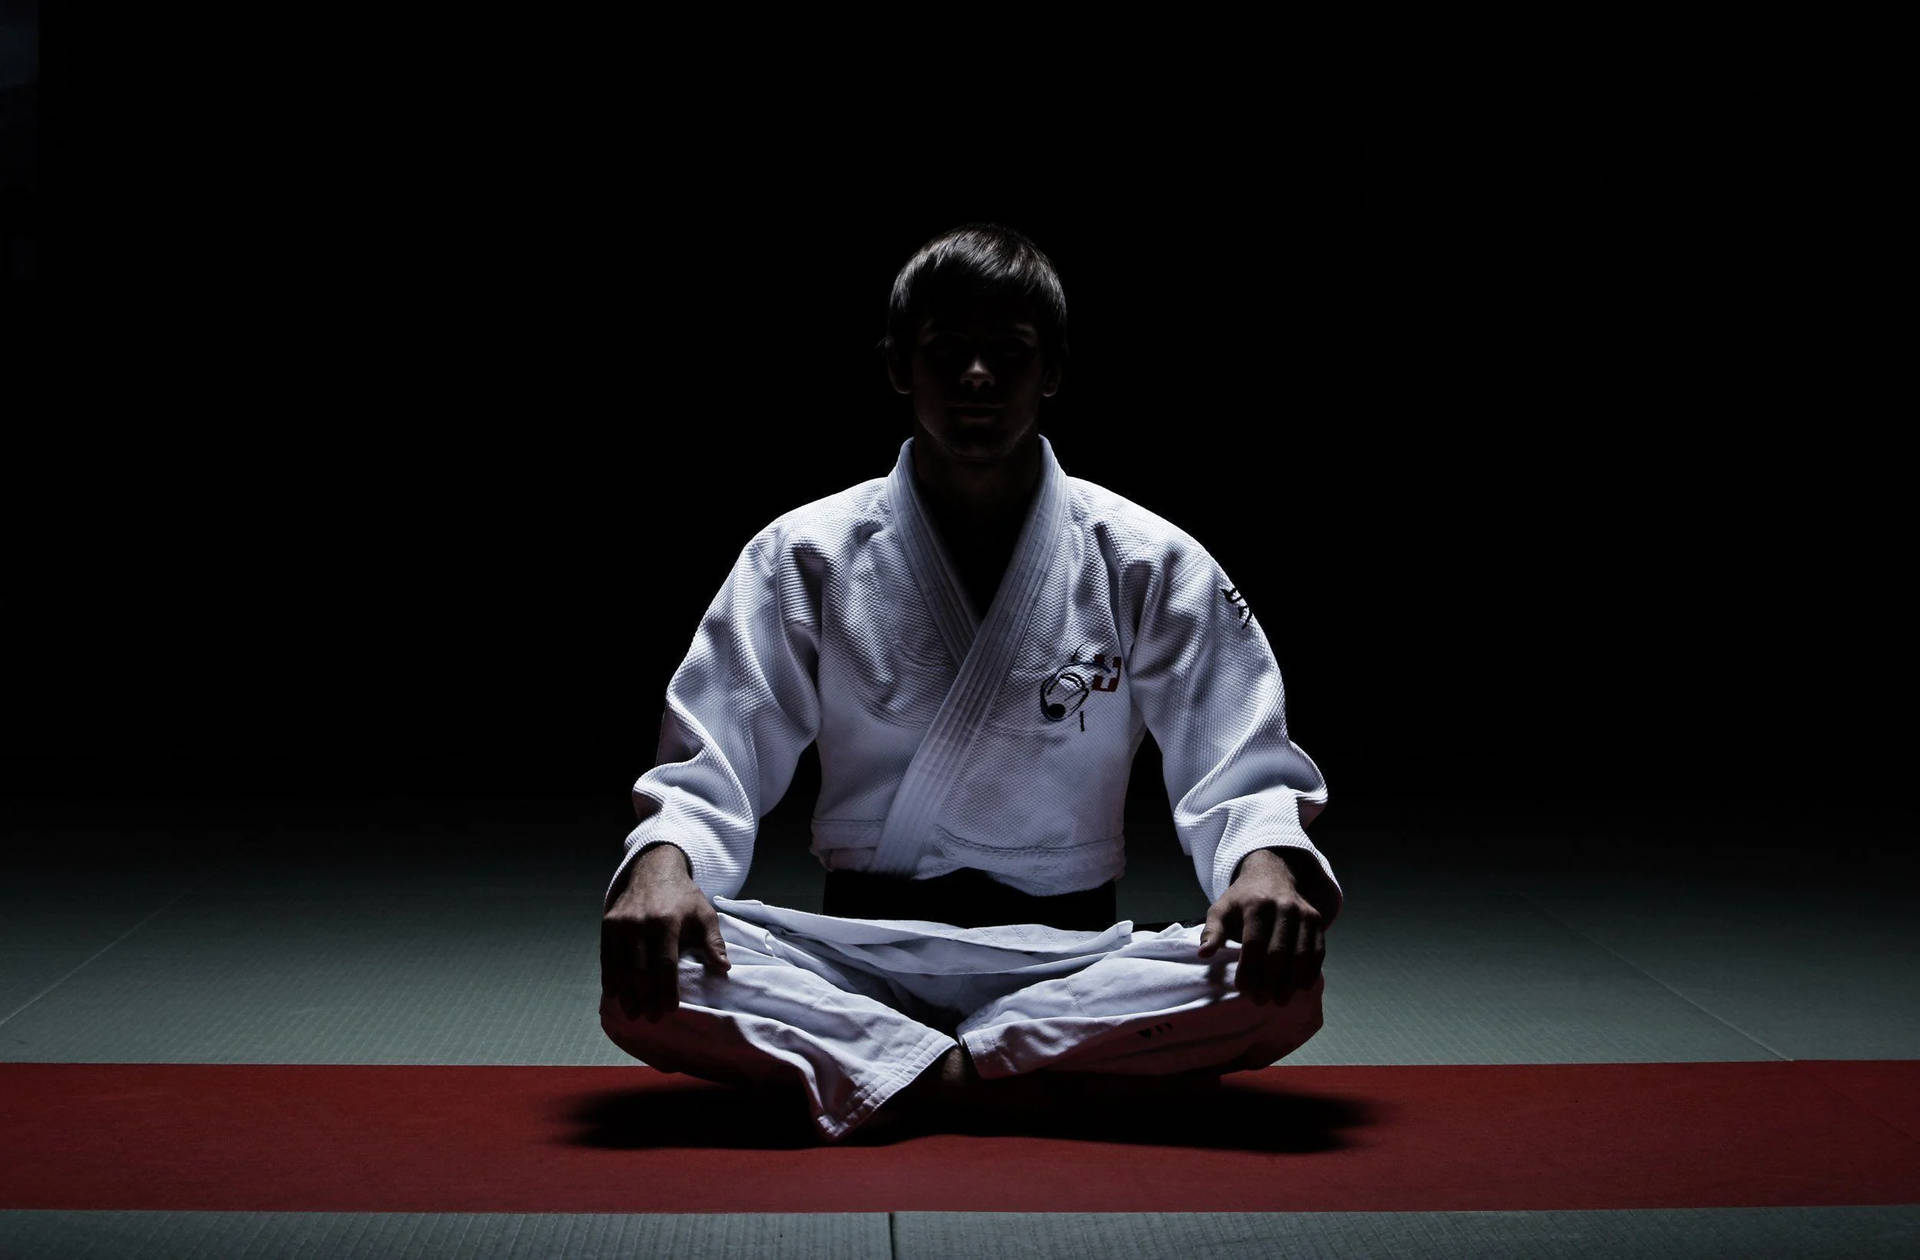 Judo In The Dark